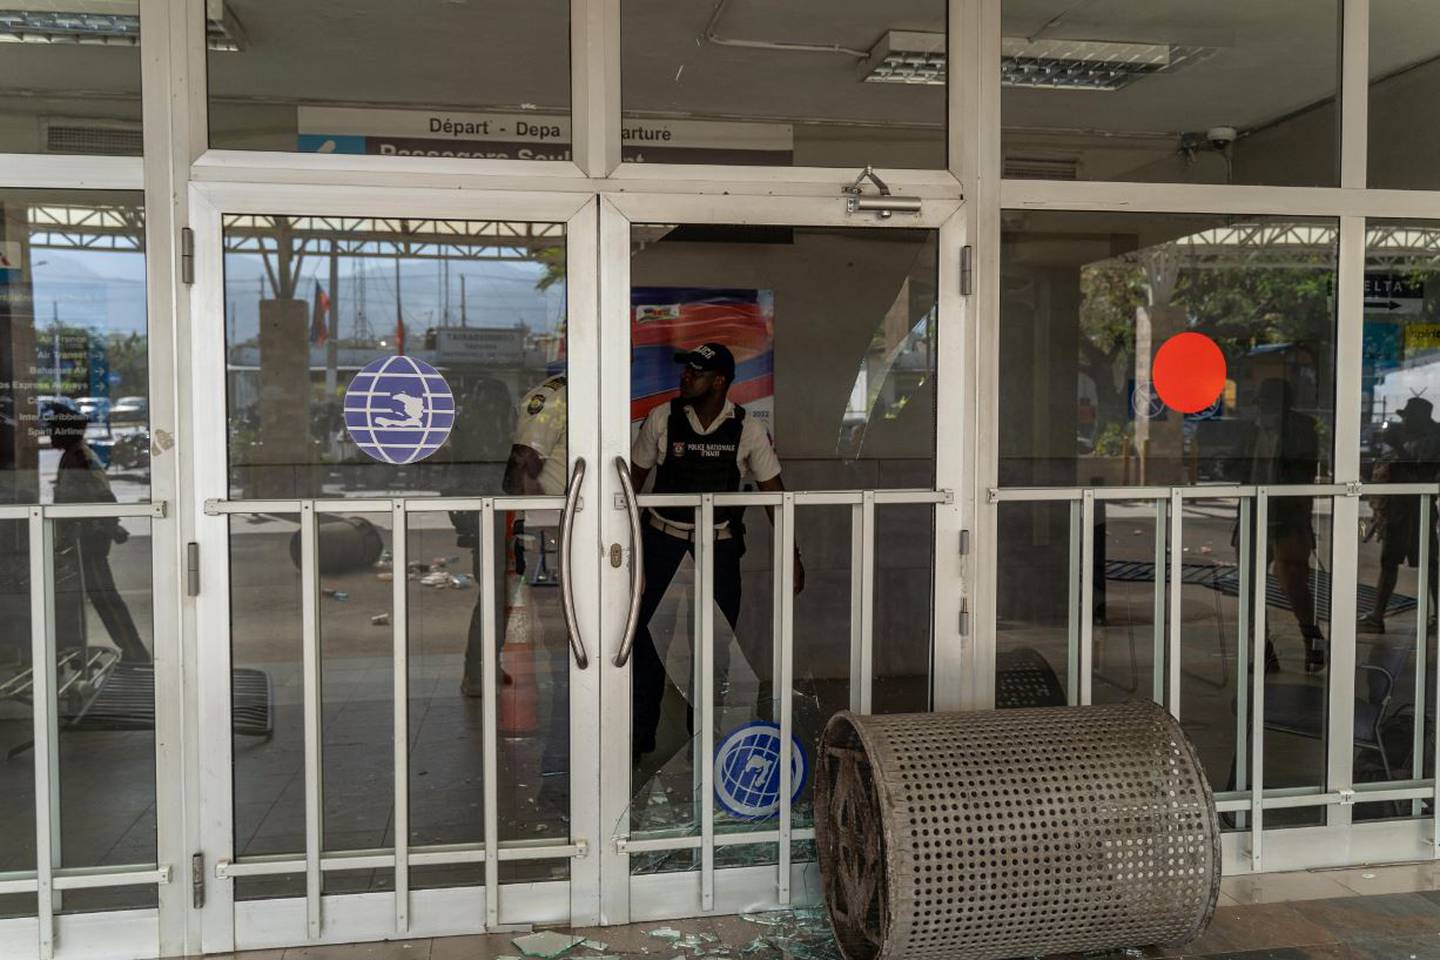 Los manifestantes trasladaron su protesta a los alrededores del aeropuerto Toussaint Louverture de Puerto Príncipe causando daños a las instalaciones.dfd